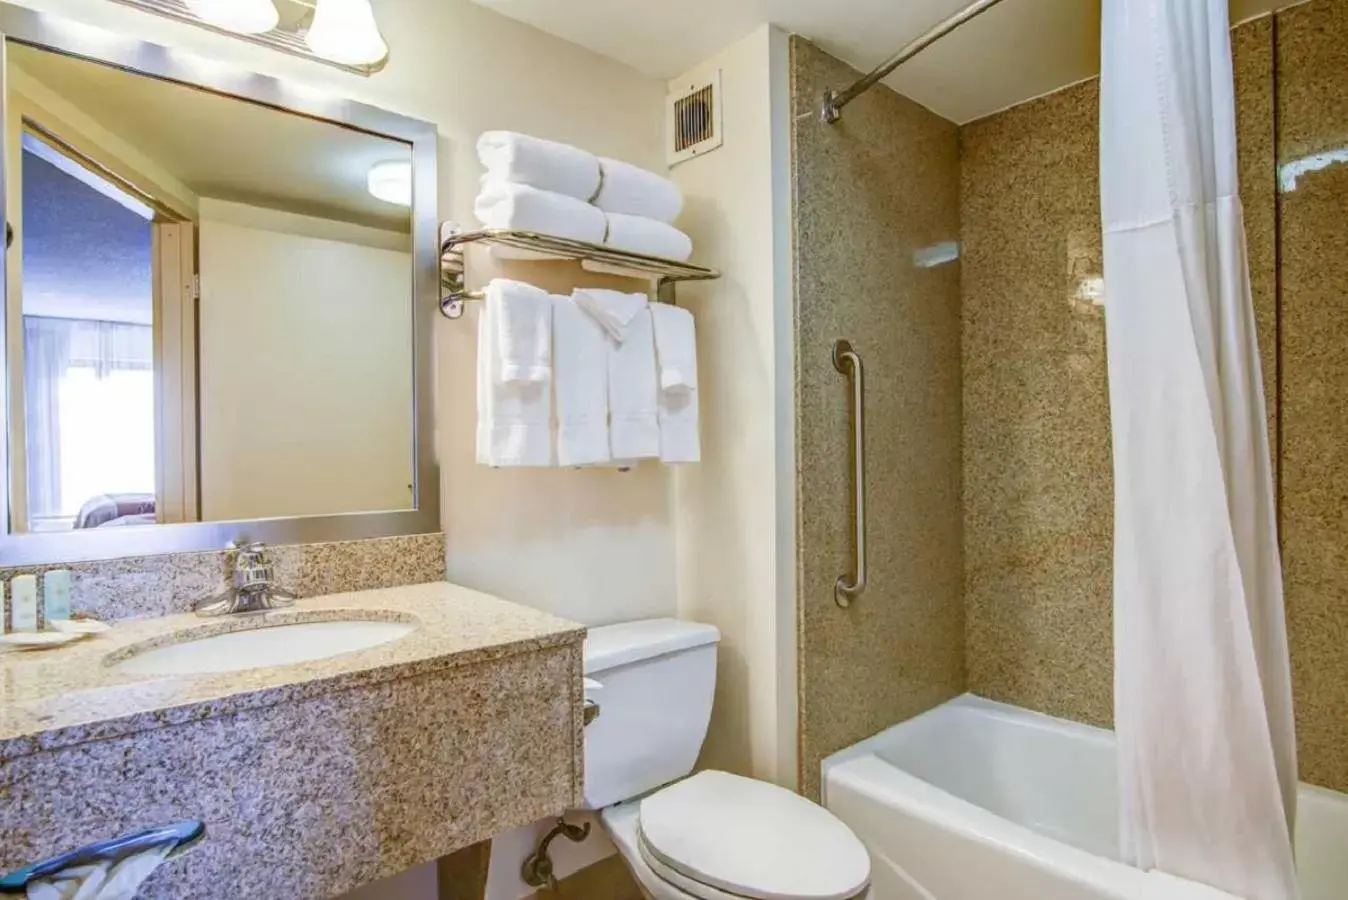 Shower, Bathroom in Comfort Inn Kennesaw